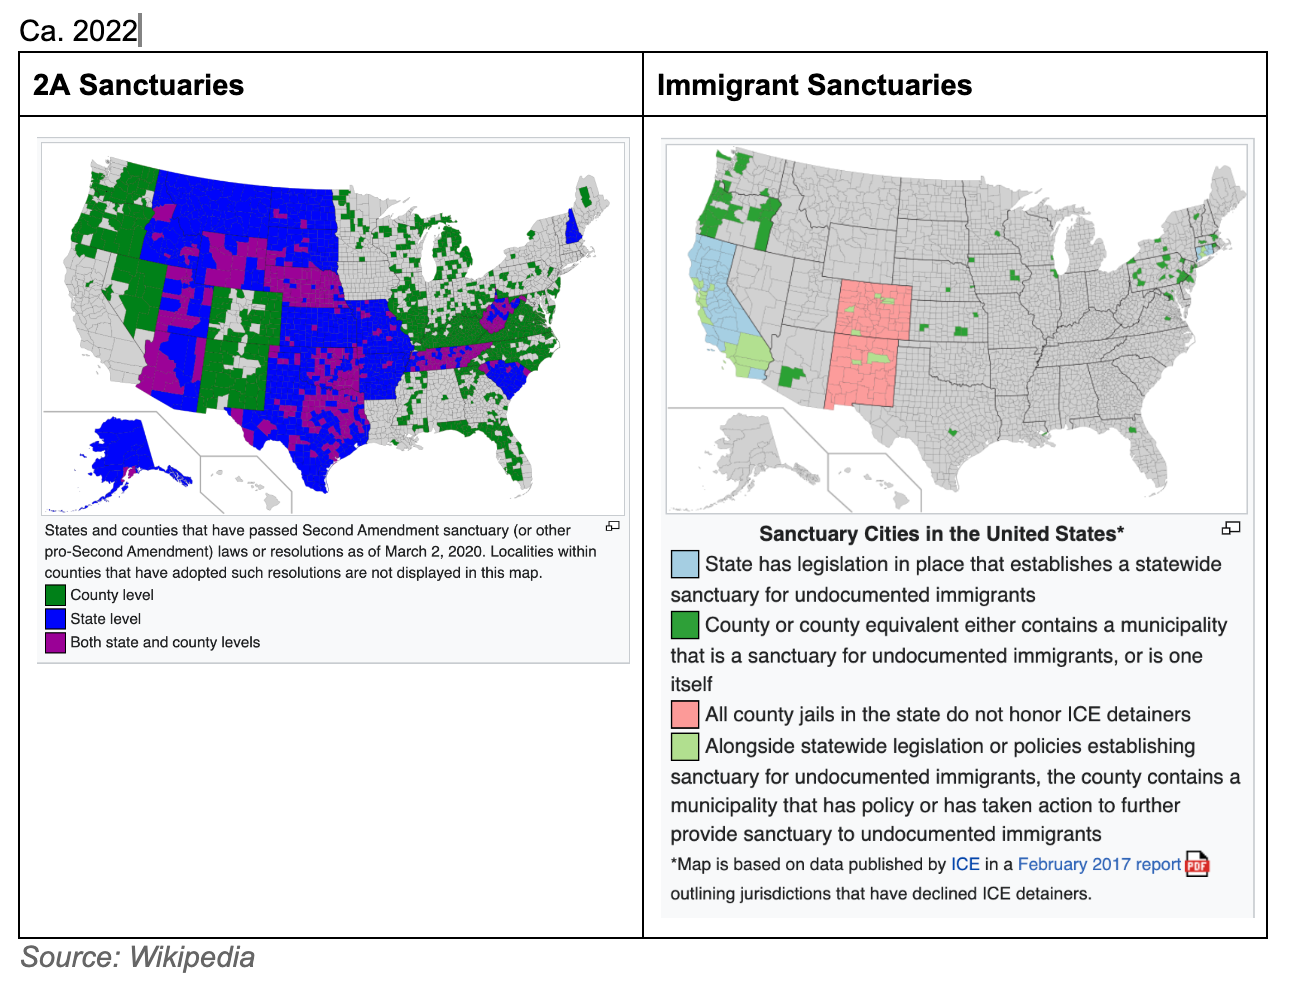 U.S. Sanctuary Areas, ca. 2022